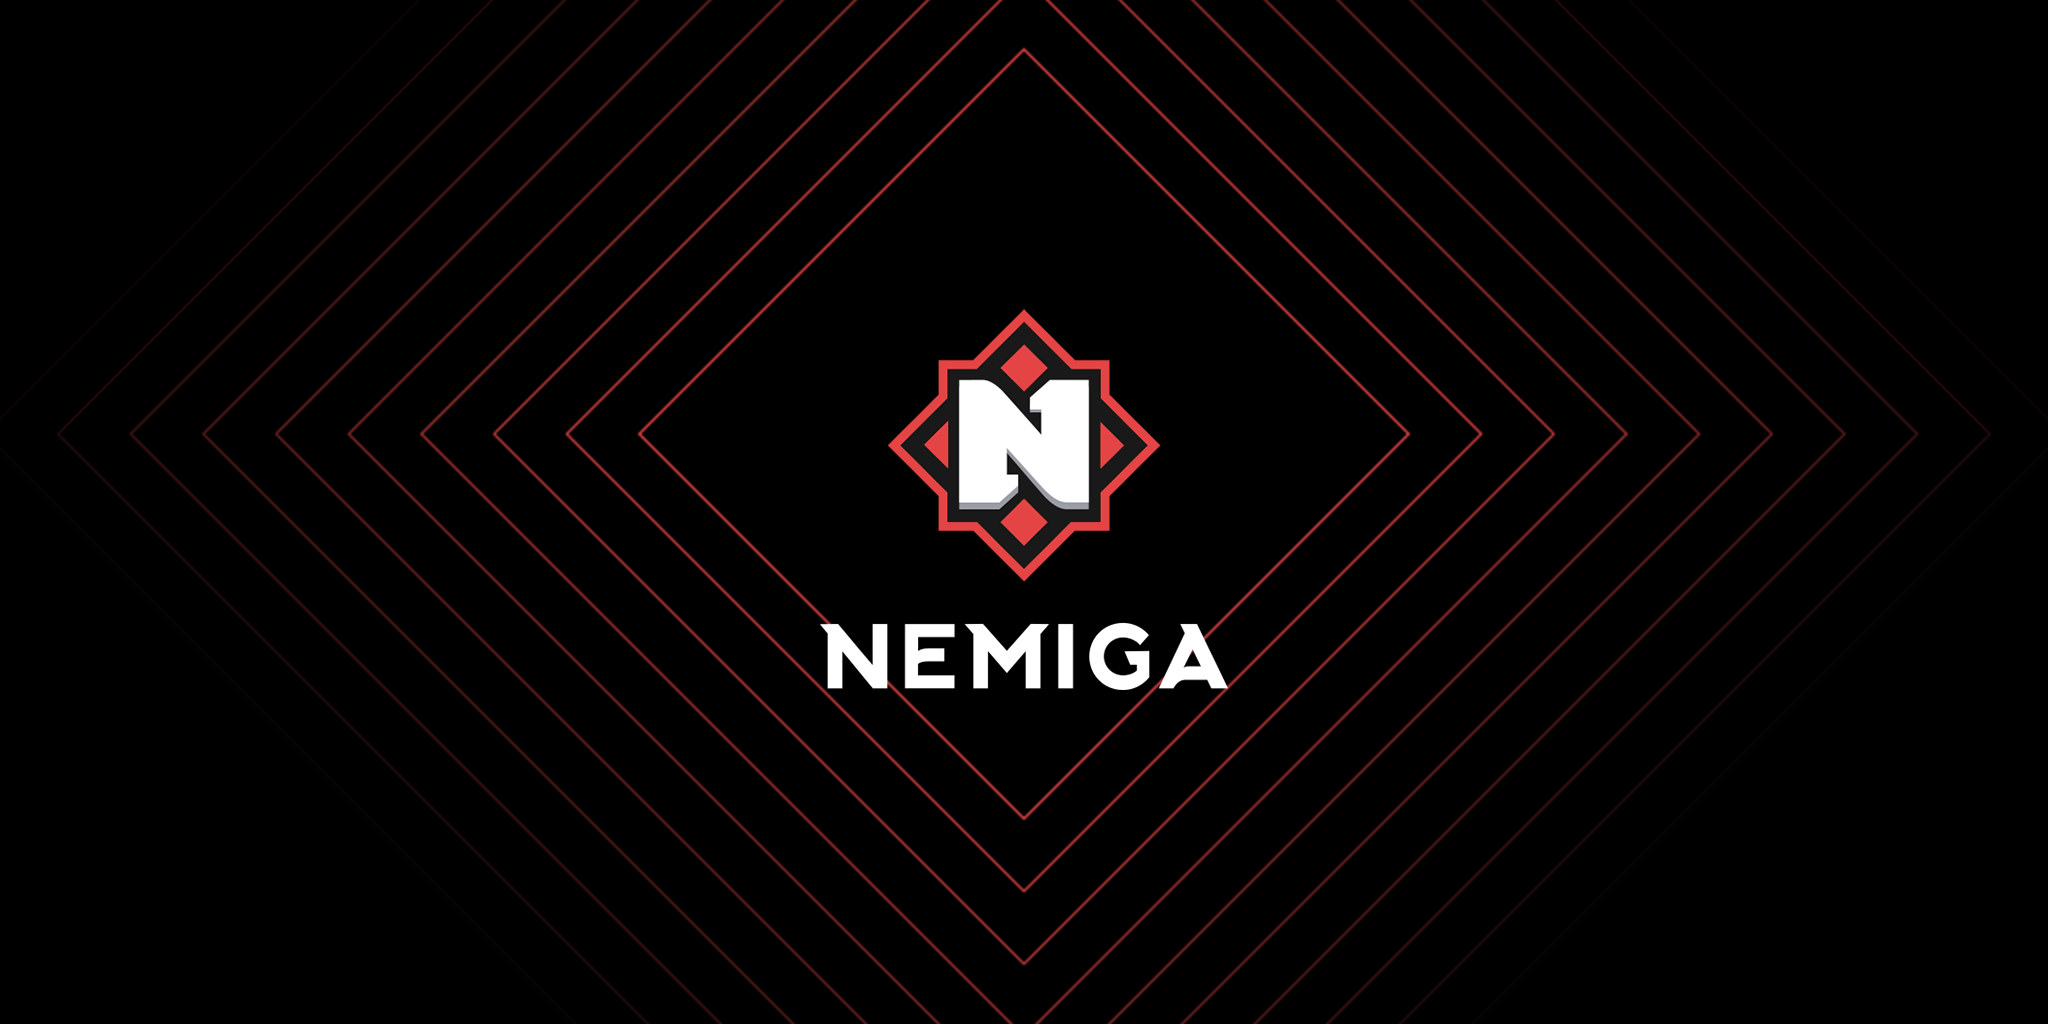 Nemiga Gaming одержала победу над командой SIBE в отборочном турнире International 2023 по Dota 2 в Восточной Европе